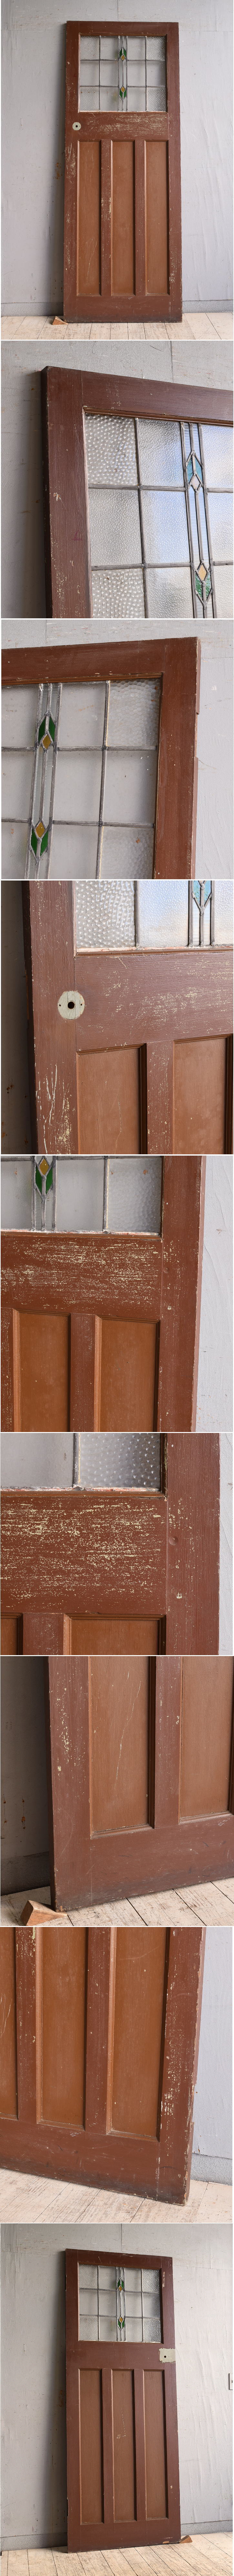 イギリス アンティーク ステンドグラス入り木製ドア 扉 建具 9782